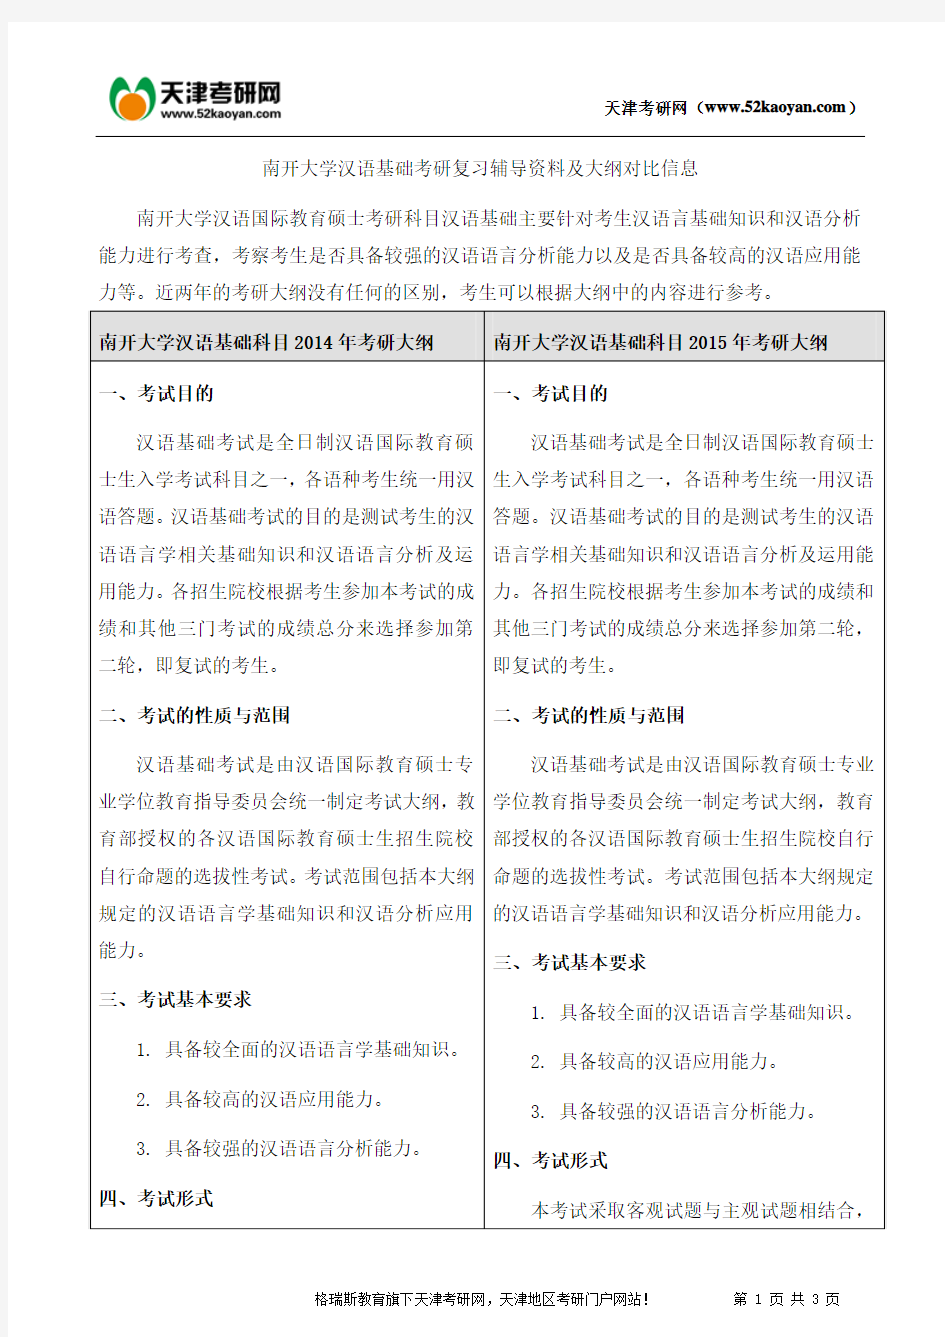 南开大学汉语基础考研复习辅导资料及大纲对比信息